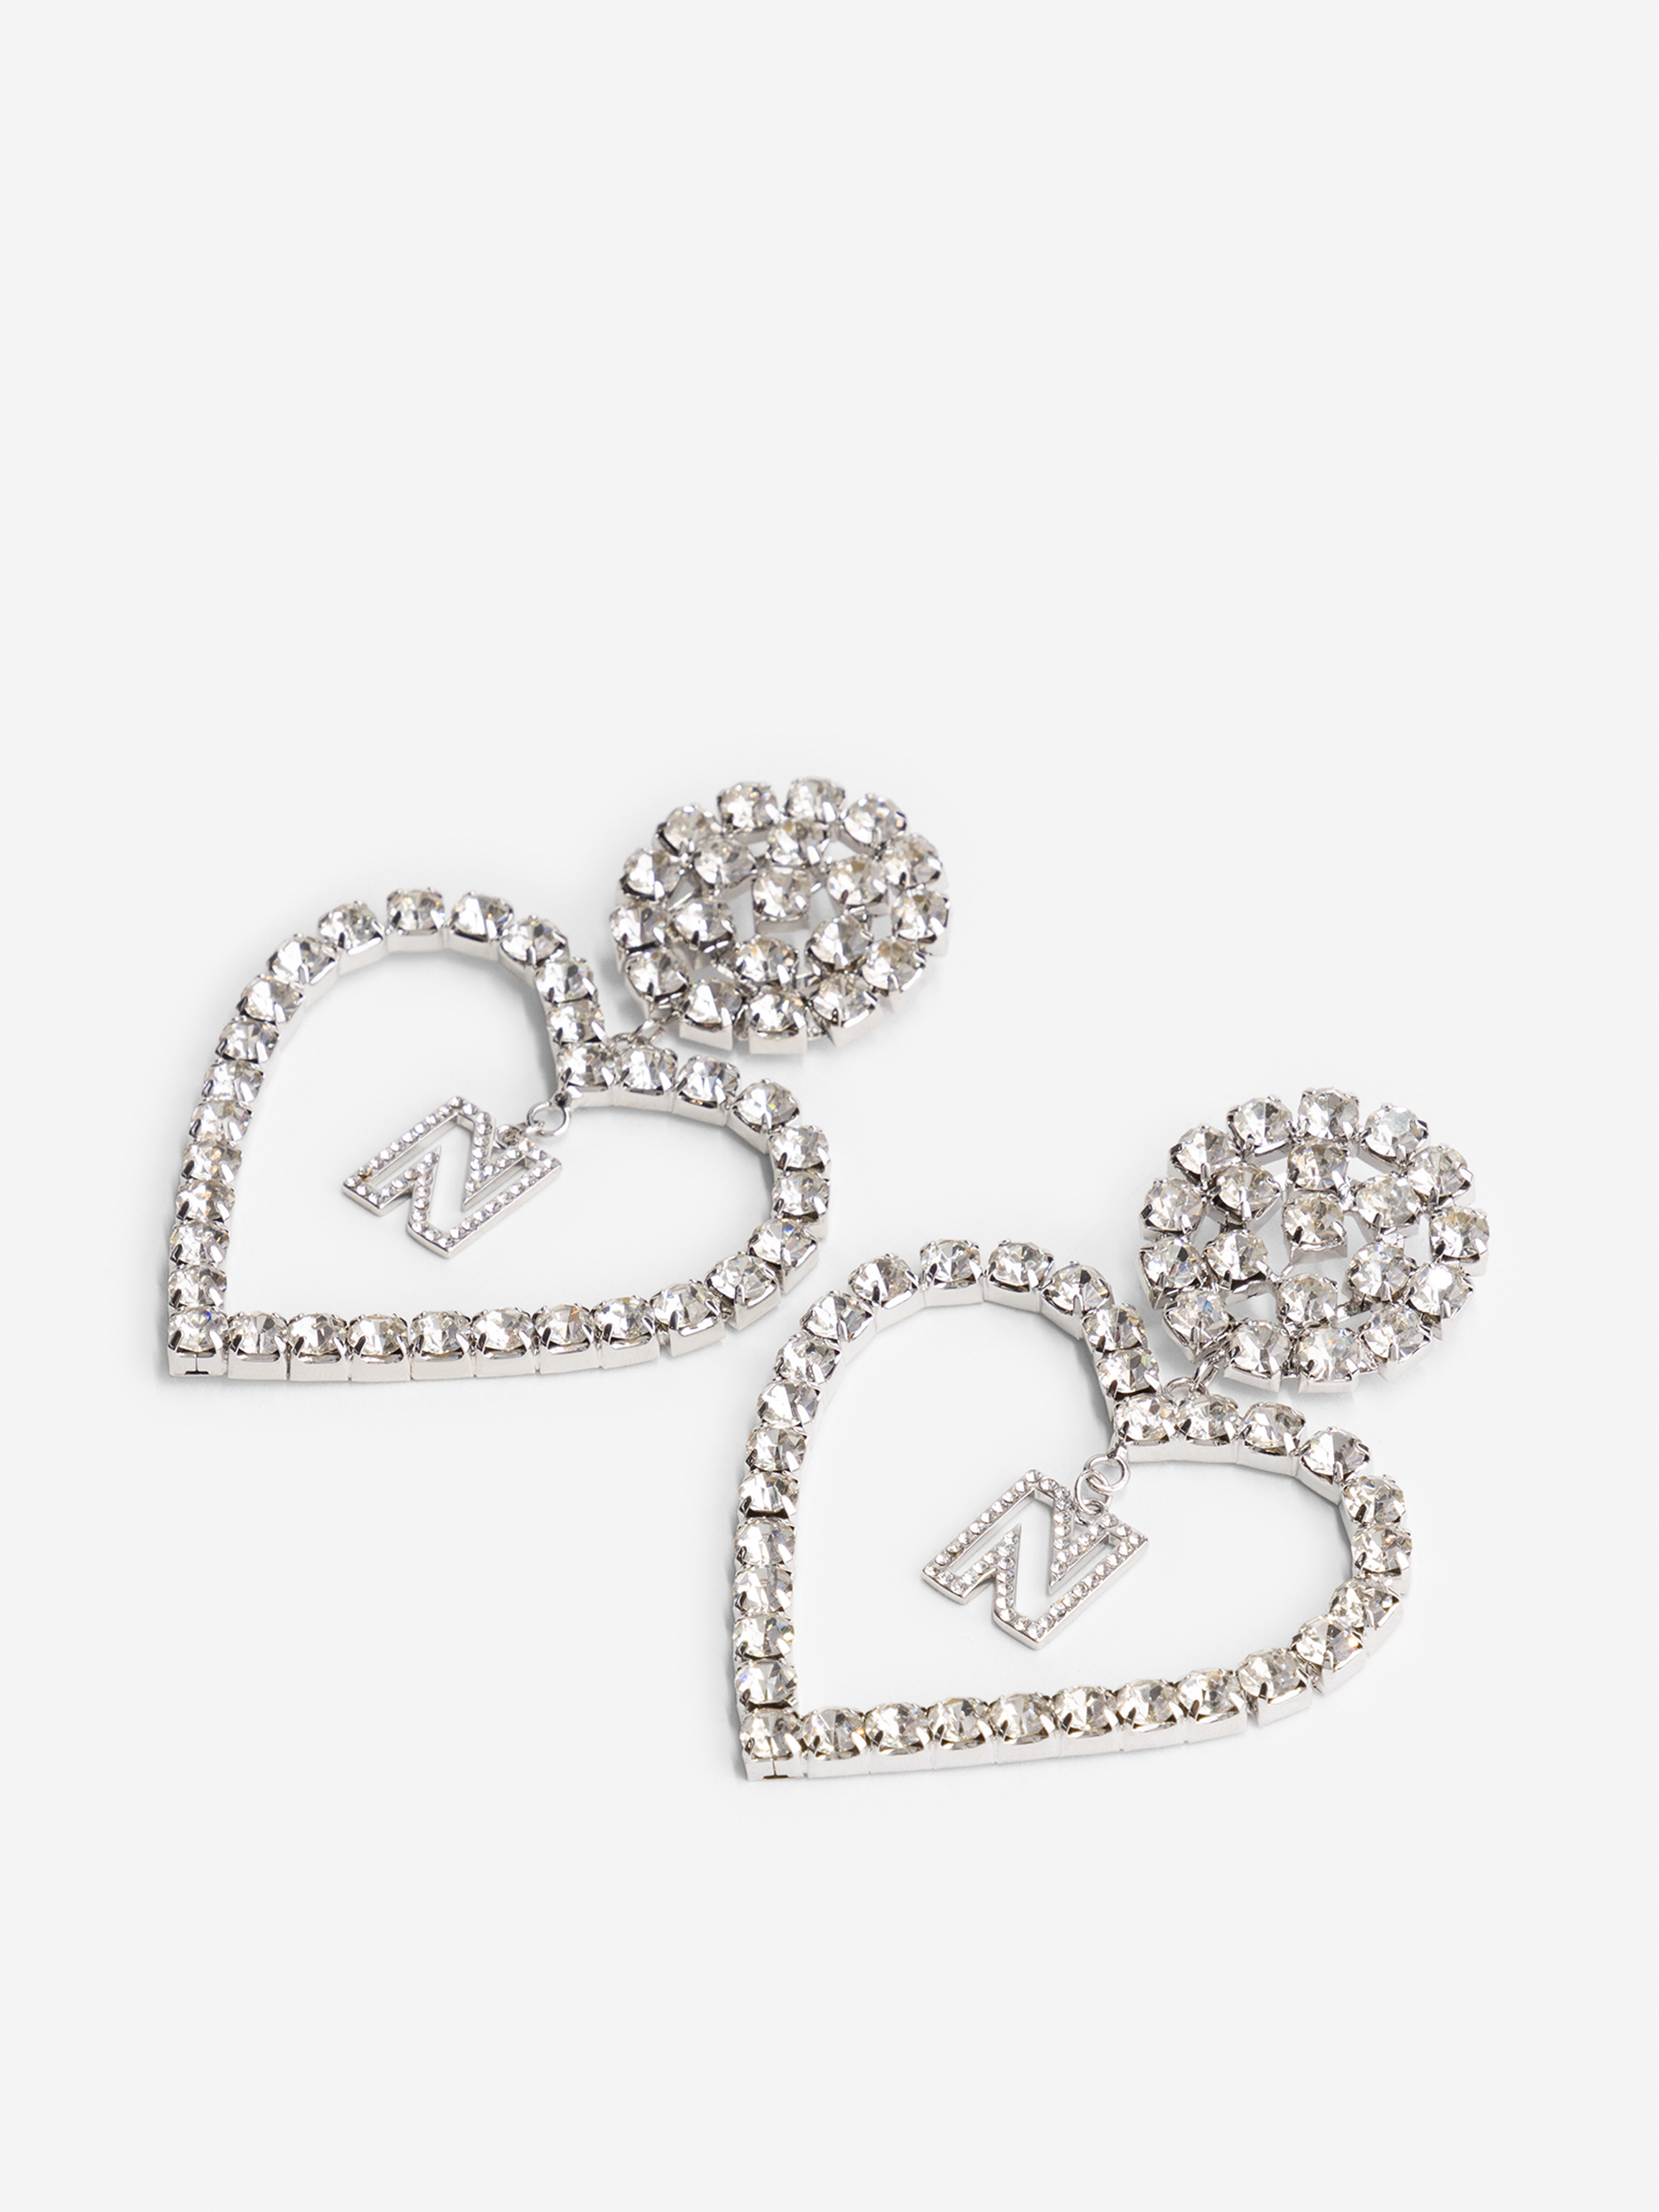 Gemstone Heart Earrings